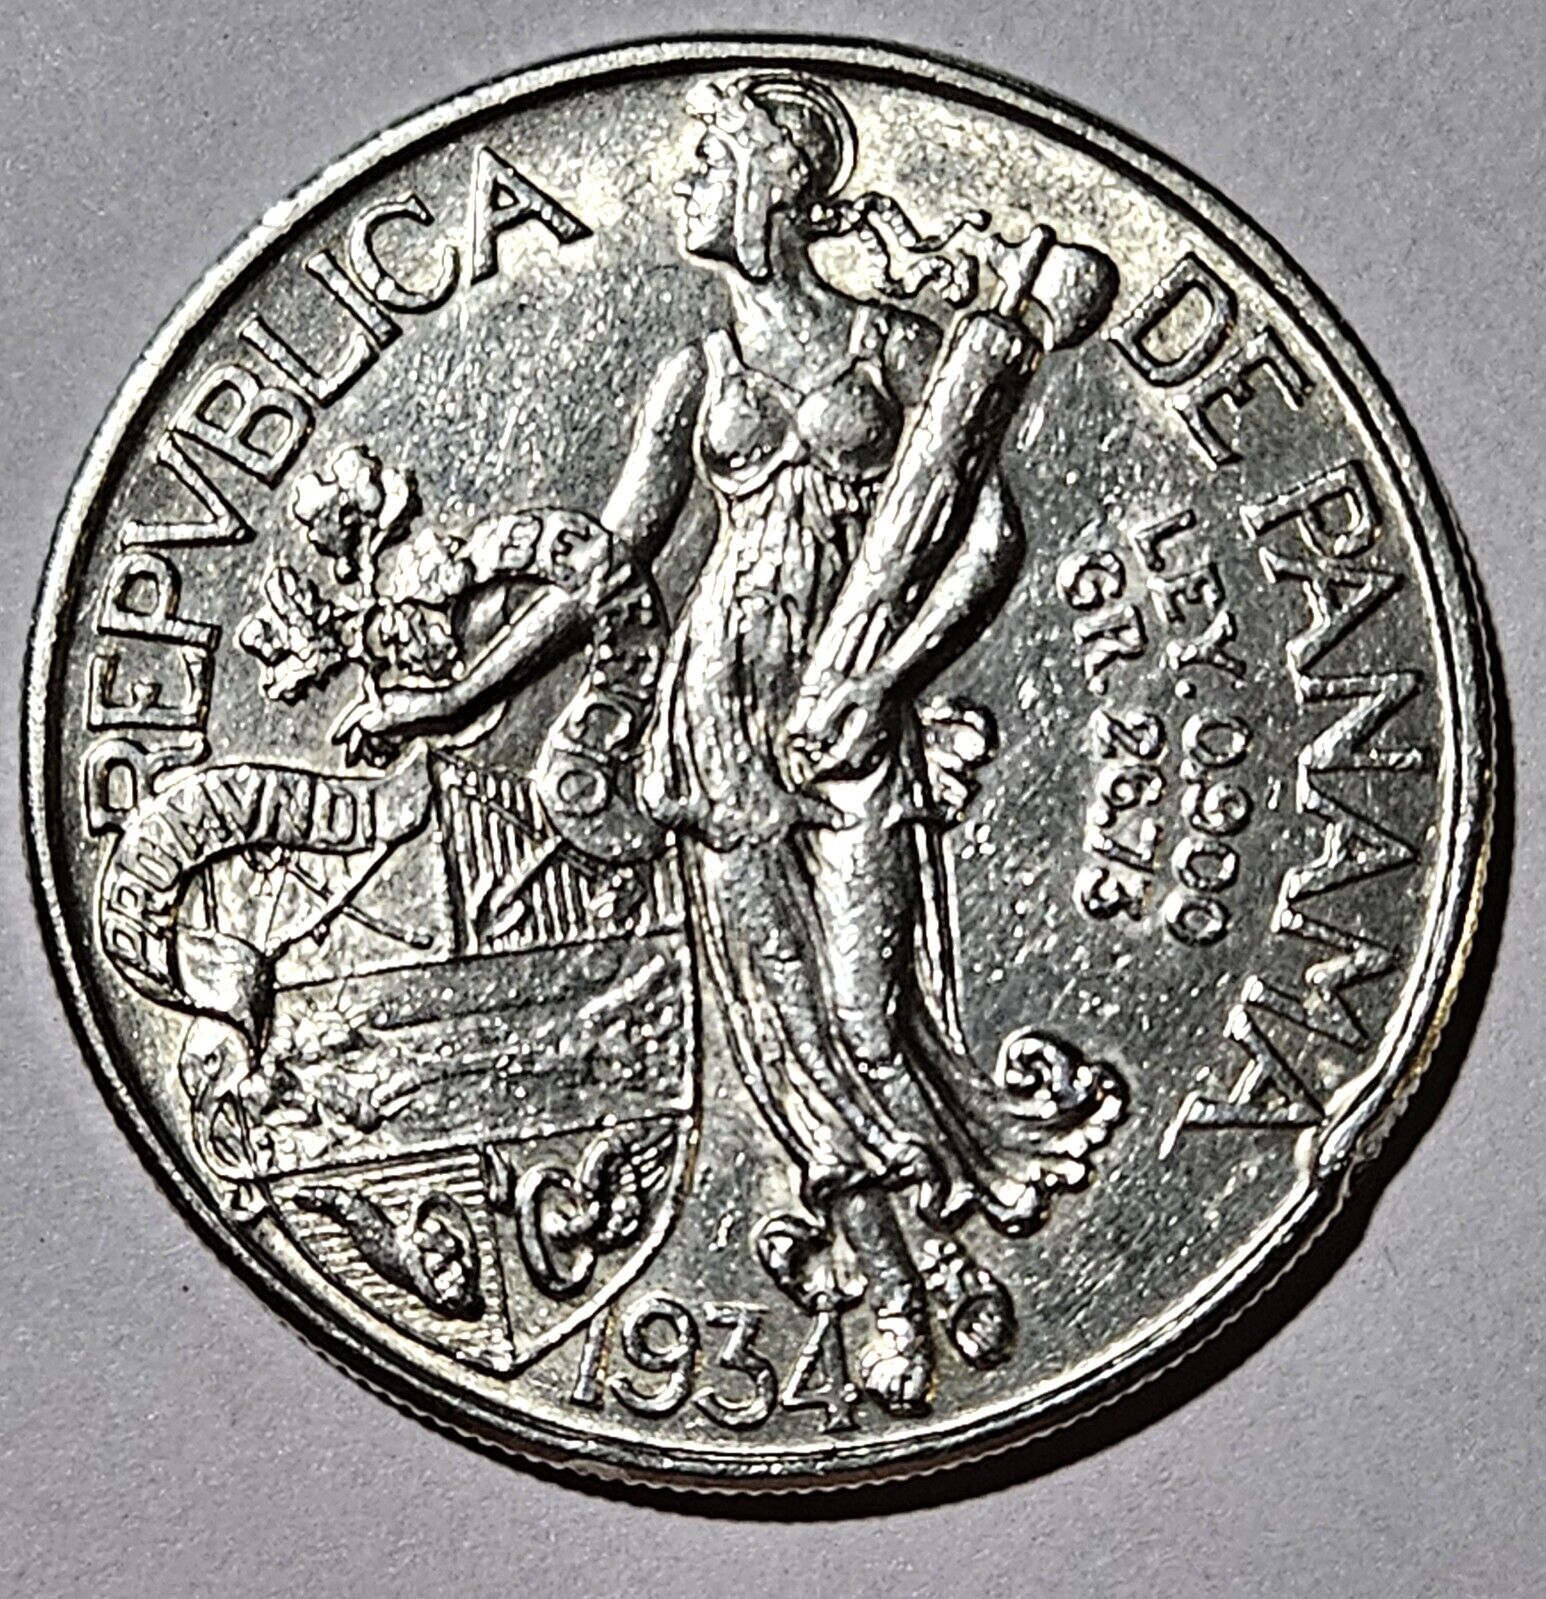 Panama 1934, 1 Balboa, 90% Pure Silver-Pure History \